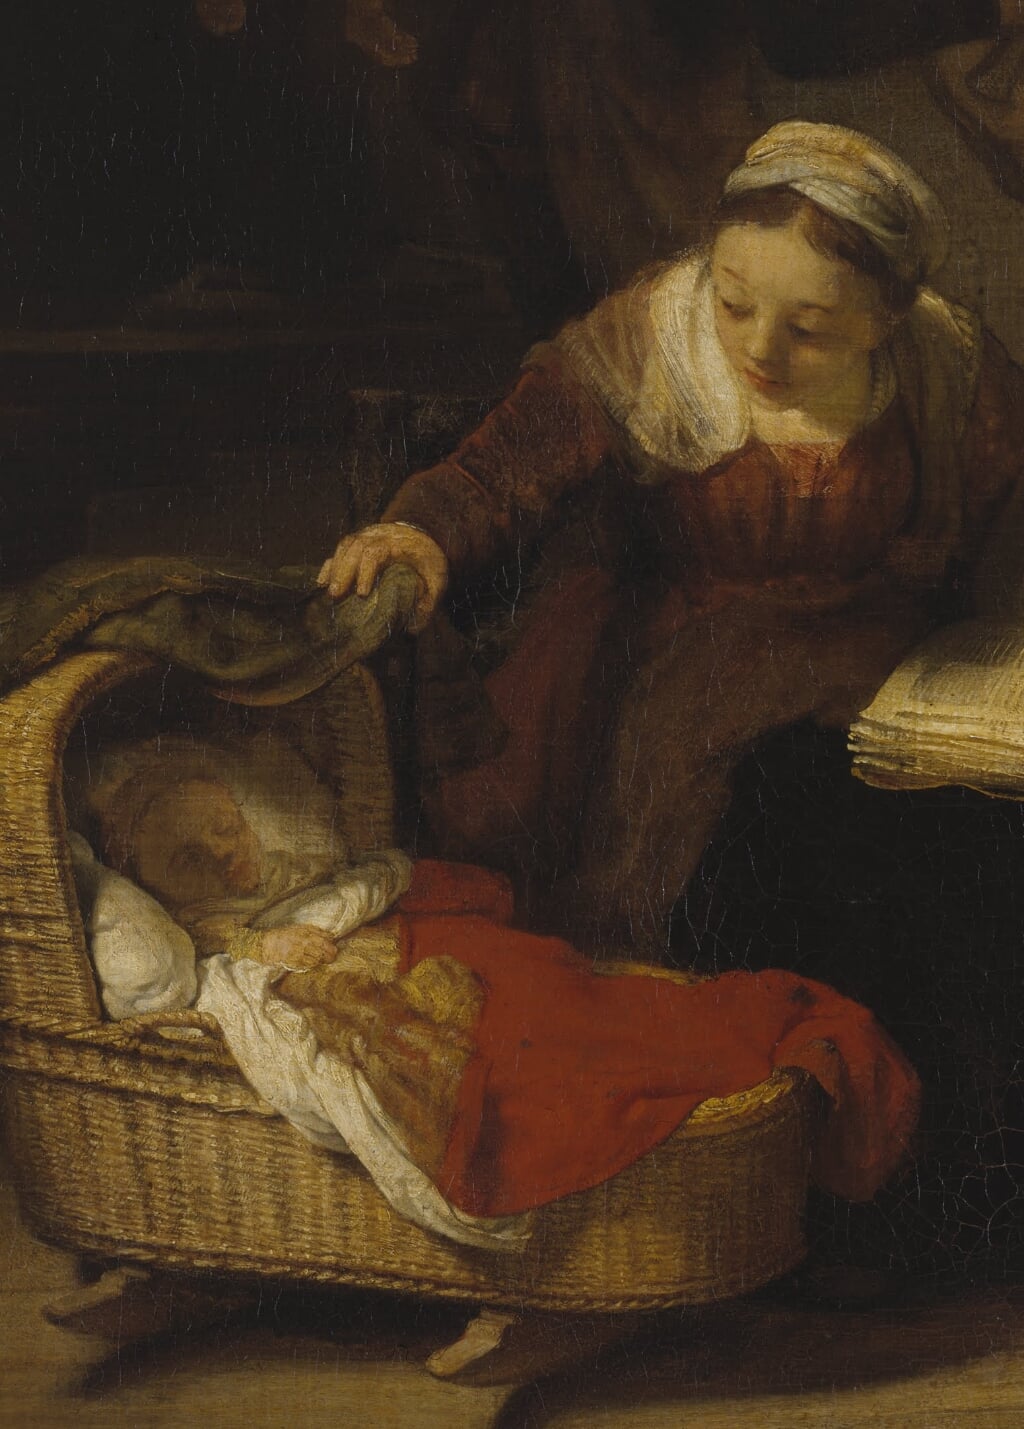 Ver voor de invoering van het ouderschapsverlof: Rembrandt.